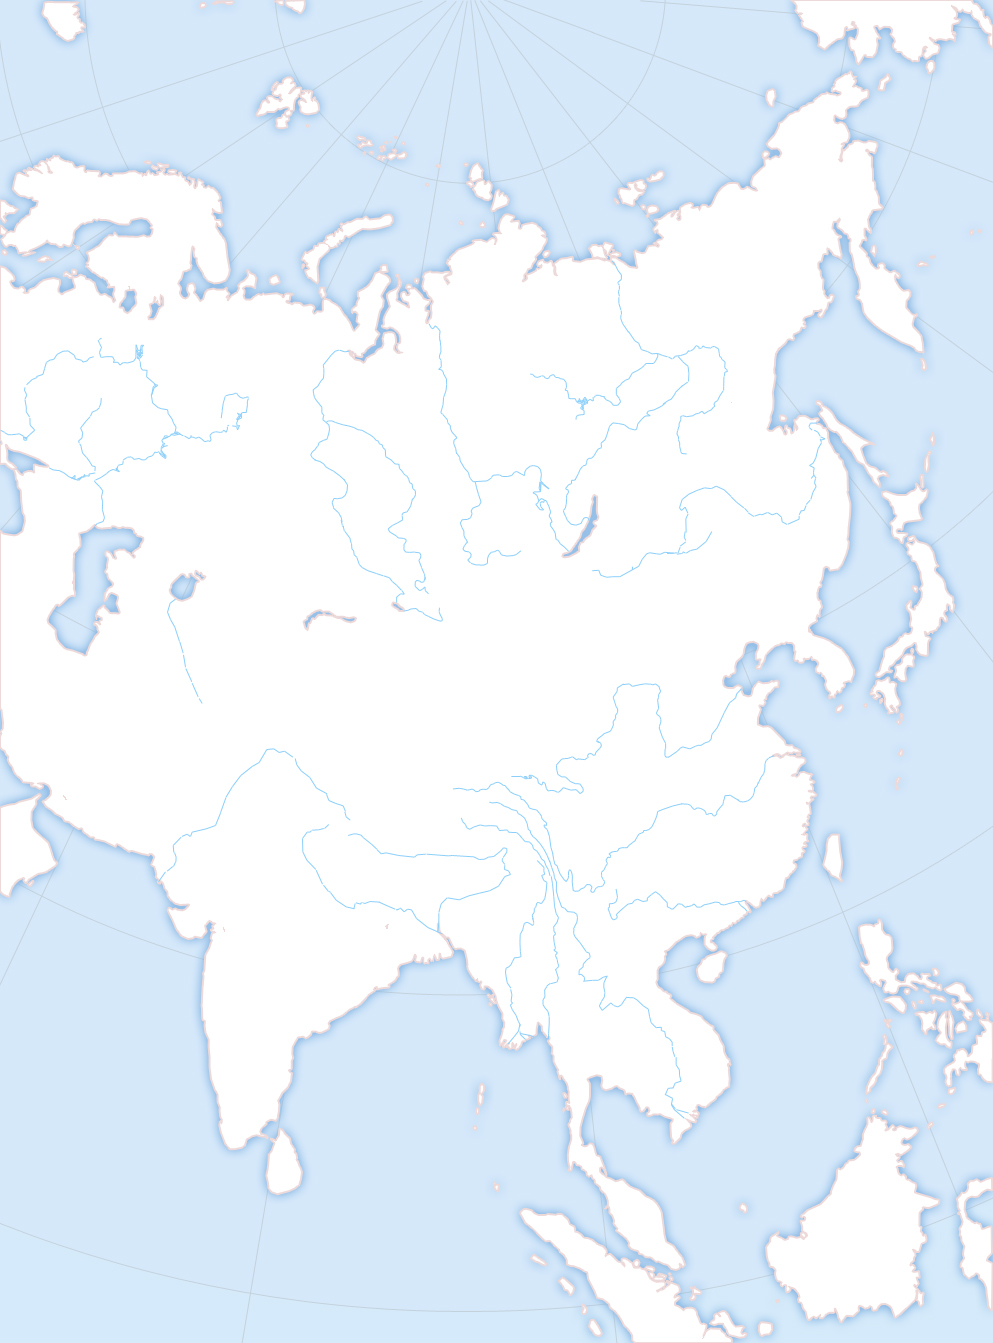 Белая пустая карта. Пустая физическая карта Евразии. Карта Азии без границ для маппинга. Контурная карта Евразии с границами государств. Карта Евразии политическая белая.